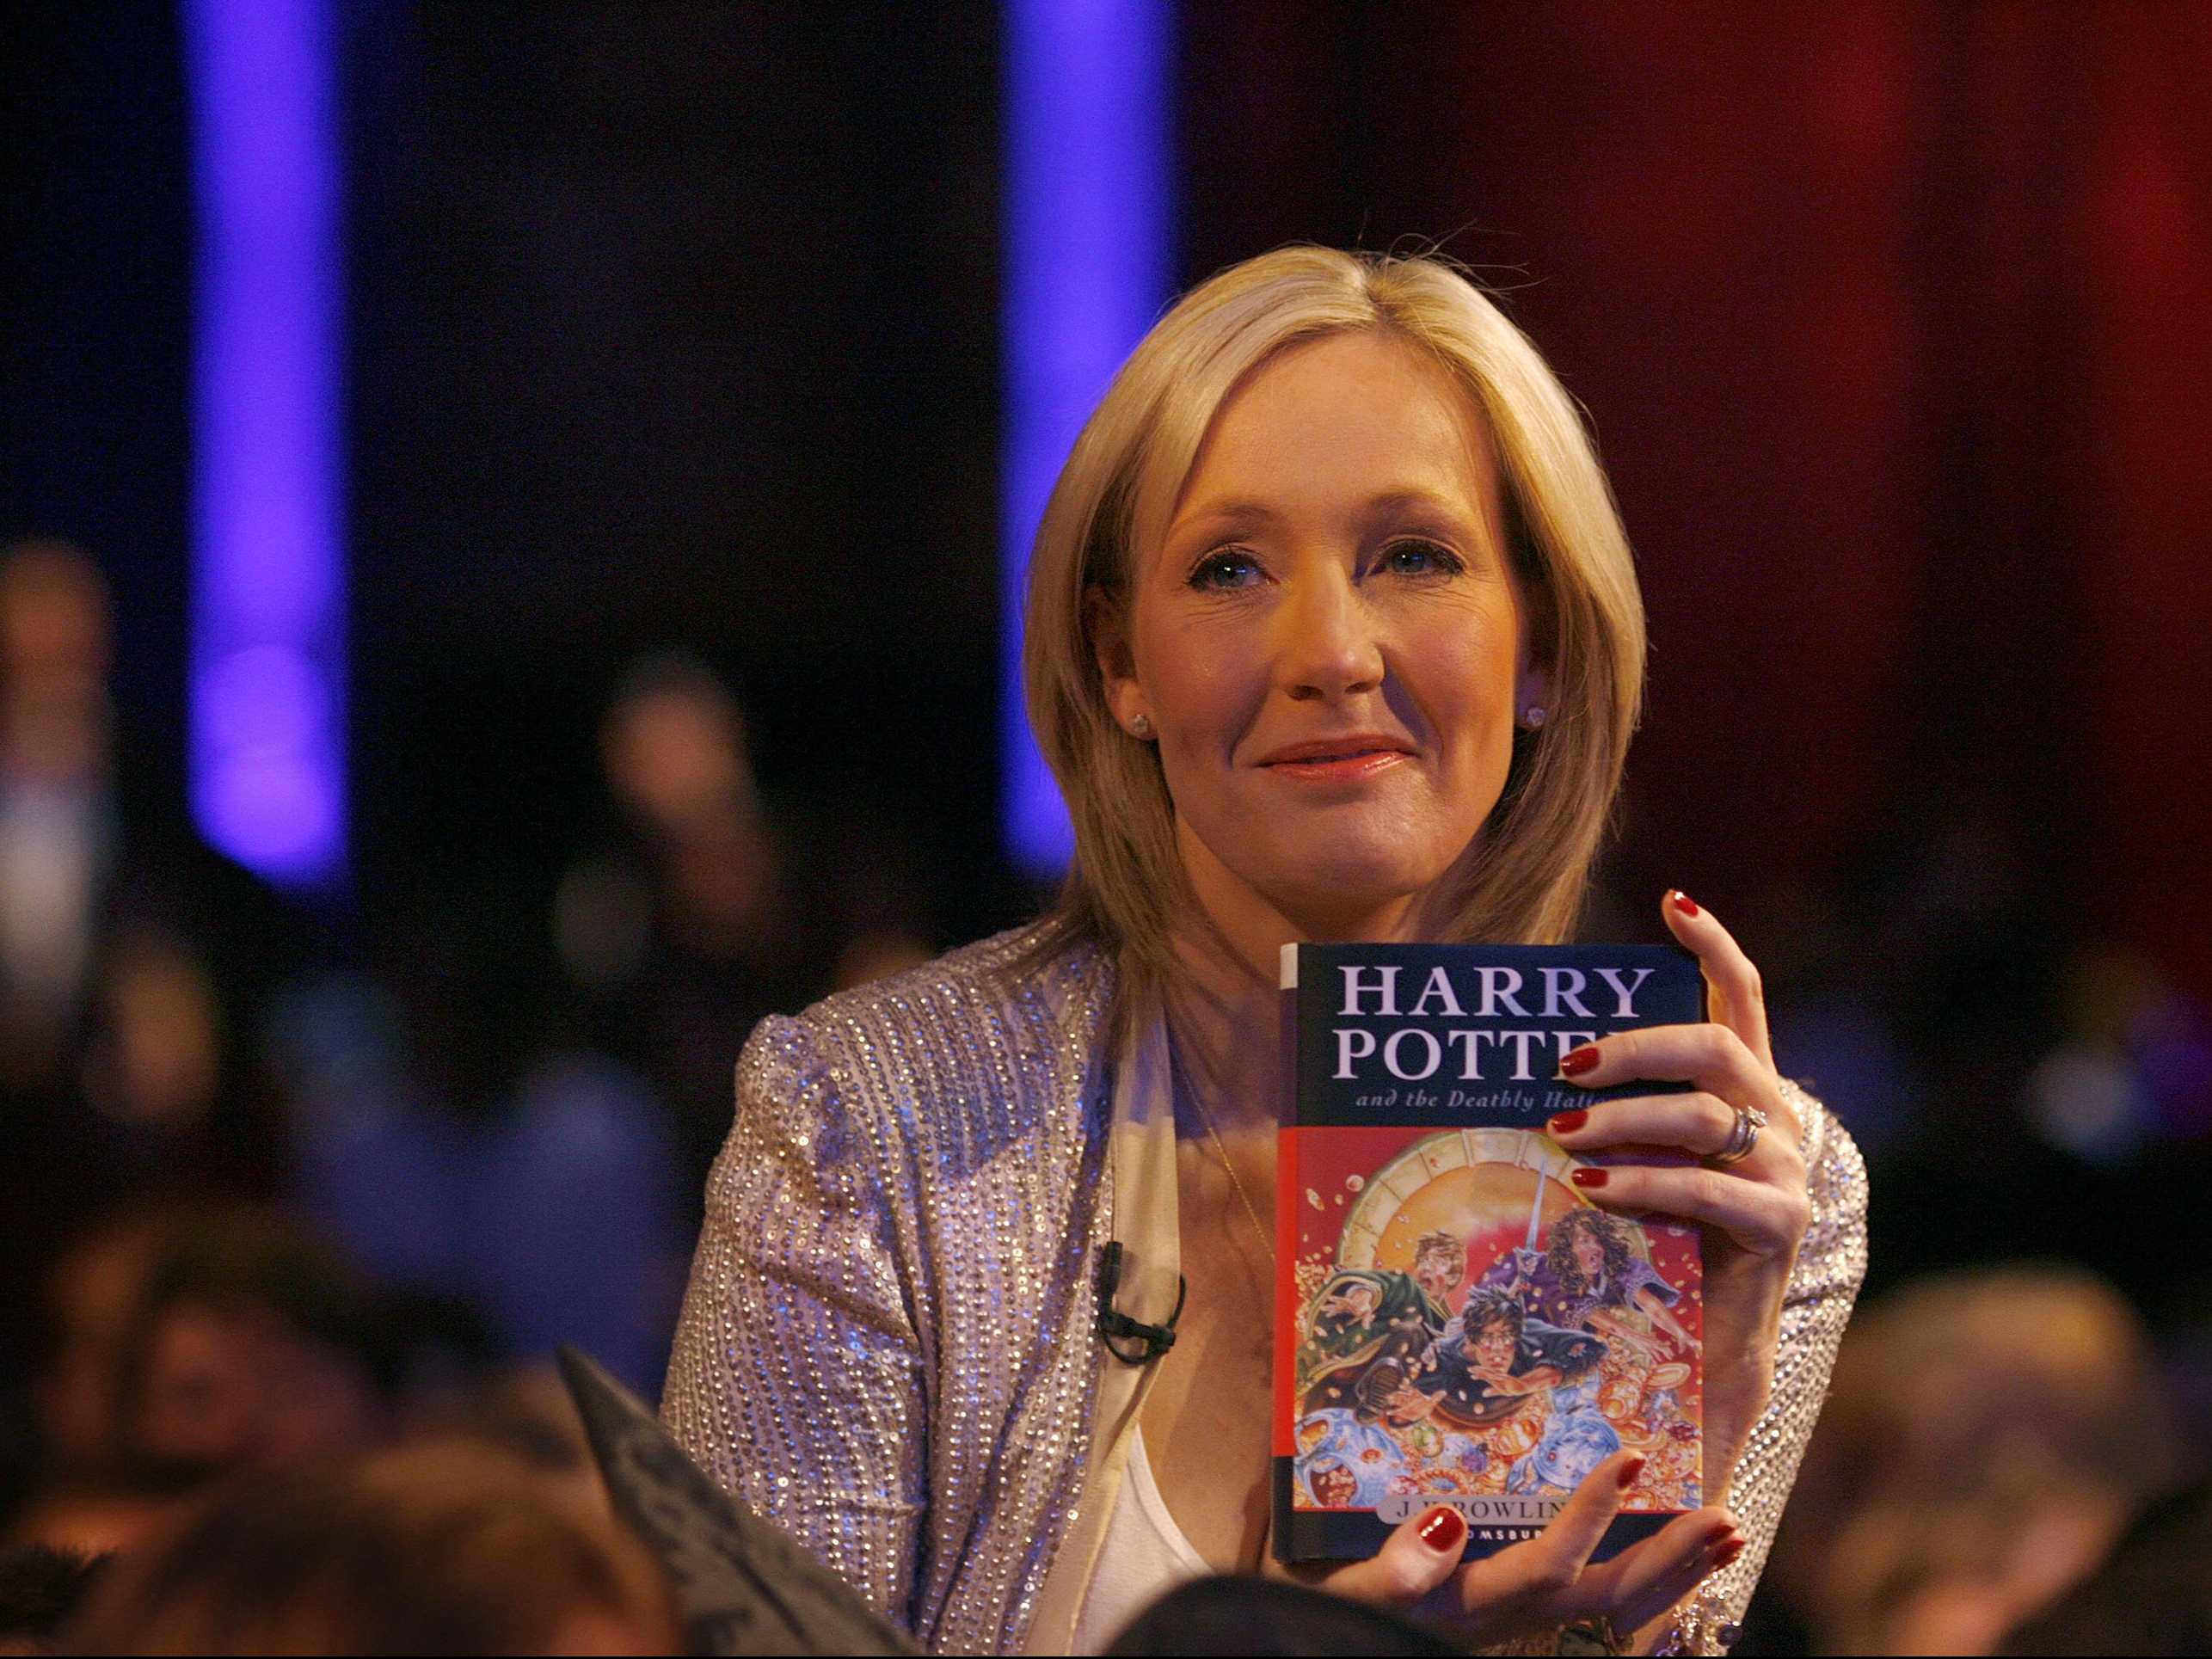 Trước khi trở thành một nữ văn sĩ kiếm tiền tỷ như hiện nay, J.K. Rowling từng phải sống nhờ tiền trợ cấp xã hội. Trong những ngày cơ cực đó, bà đã viết nên cuốn sách đầu tiên trong bộ truyện 7 phần Harry Potter. Tuy nhiên, mất tới cả năm sau tập I vẫn chưa ra mắt công chúng do bị 12 nhà xuất bản từ chối. Đó là thời kỳ bà trở nên bế tắc và từng nghĩ đến chuyện tự tử. Trải qua bao thăng trầm, tiền tác quyền từ xuất bản sách và loạt phim chuyển thể sau này đã biến nữ văn sĩ thành tỷ phú như hiện nay.